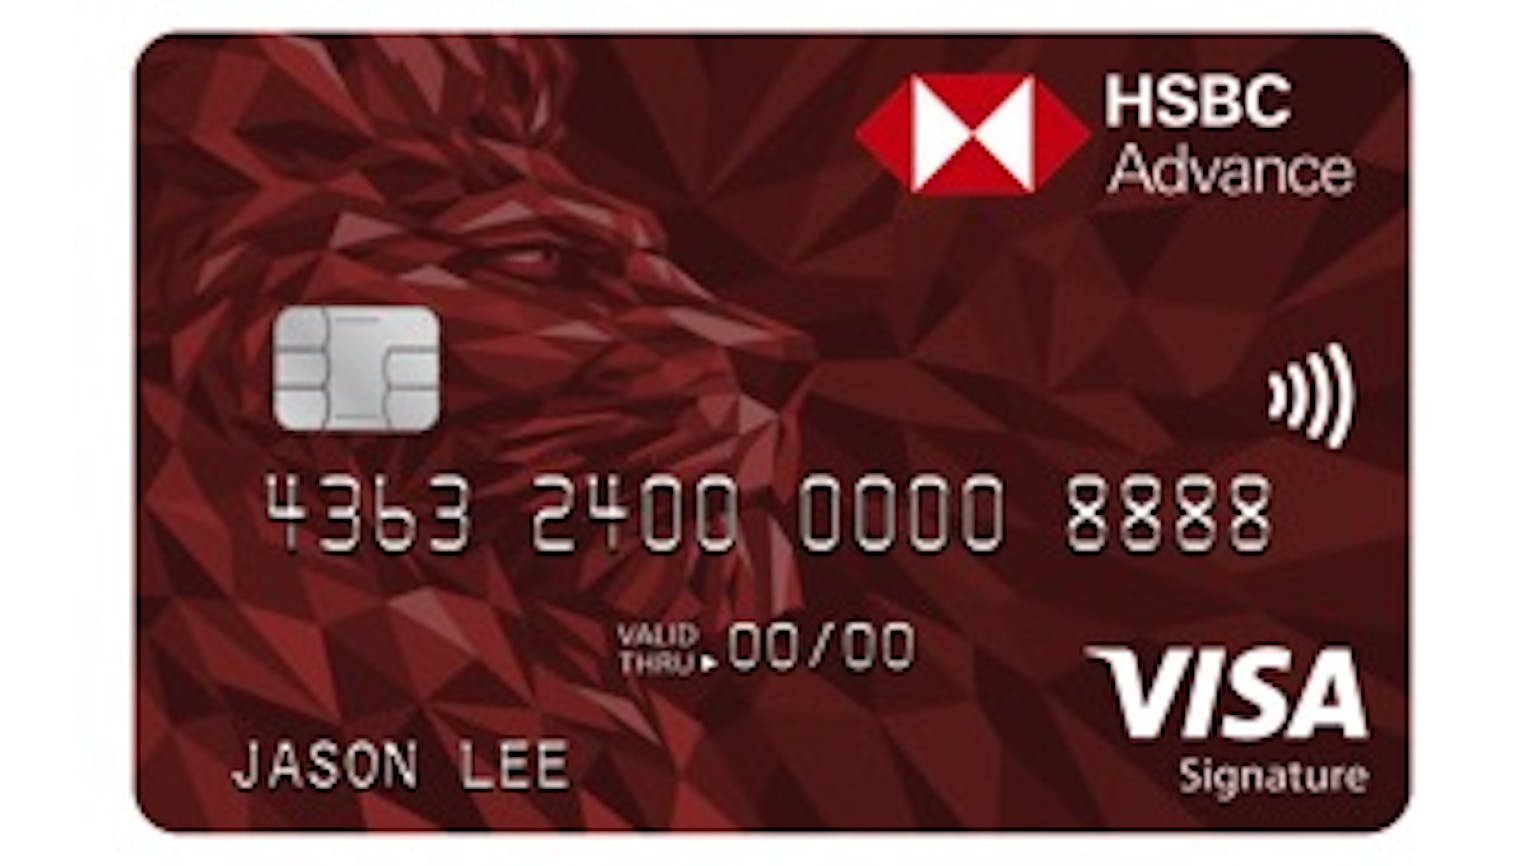 Customer service malaysia credit card hsbc HSBC Credit